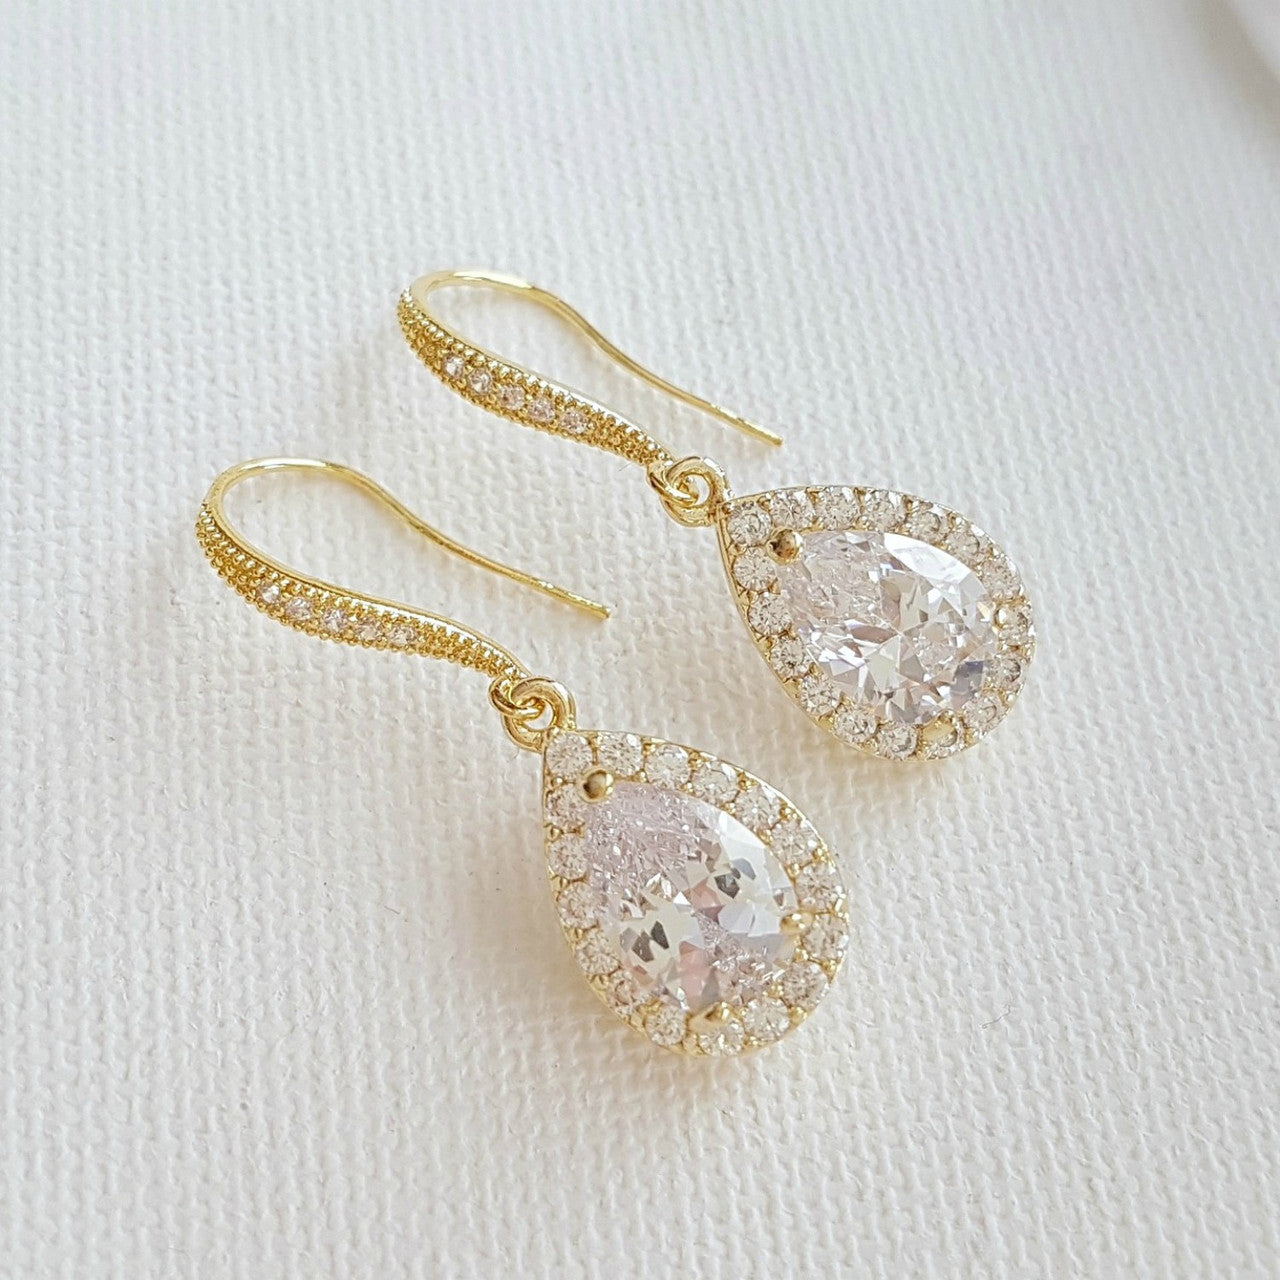 Wedding Dangle Earrings in Rose Gold-Emma